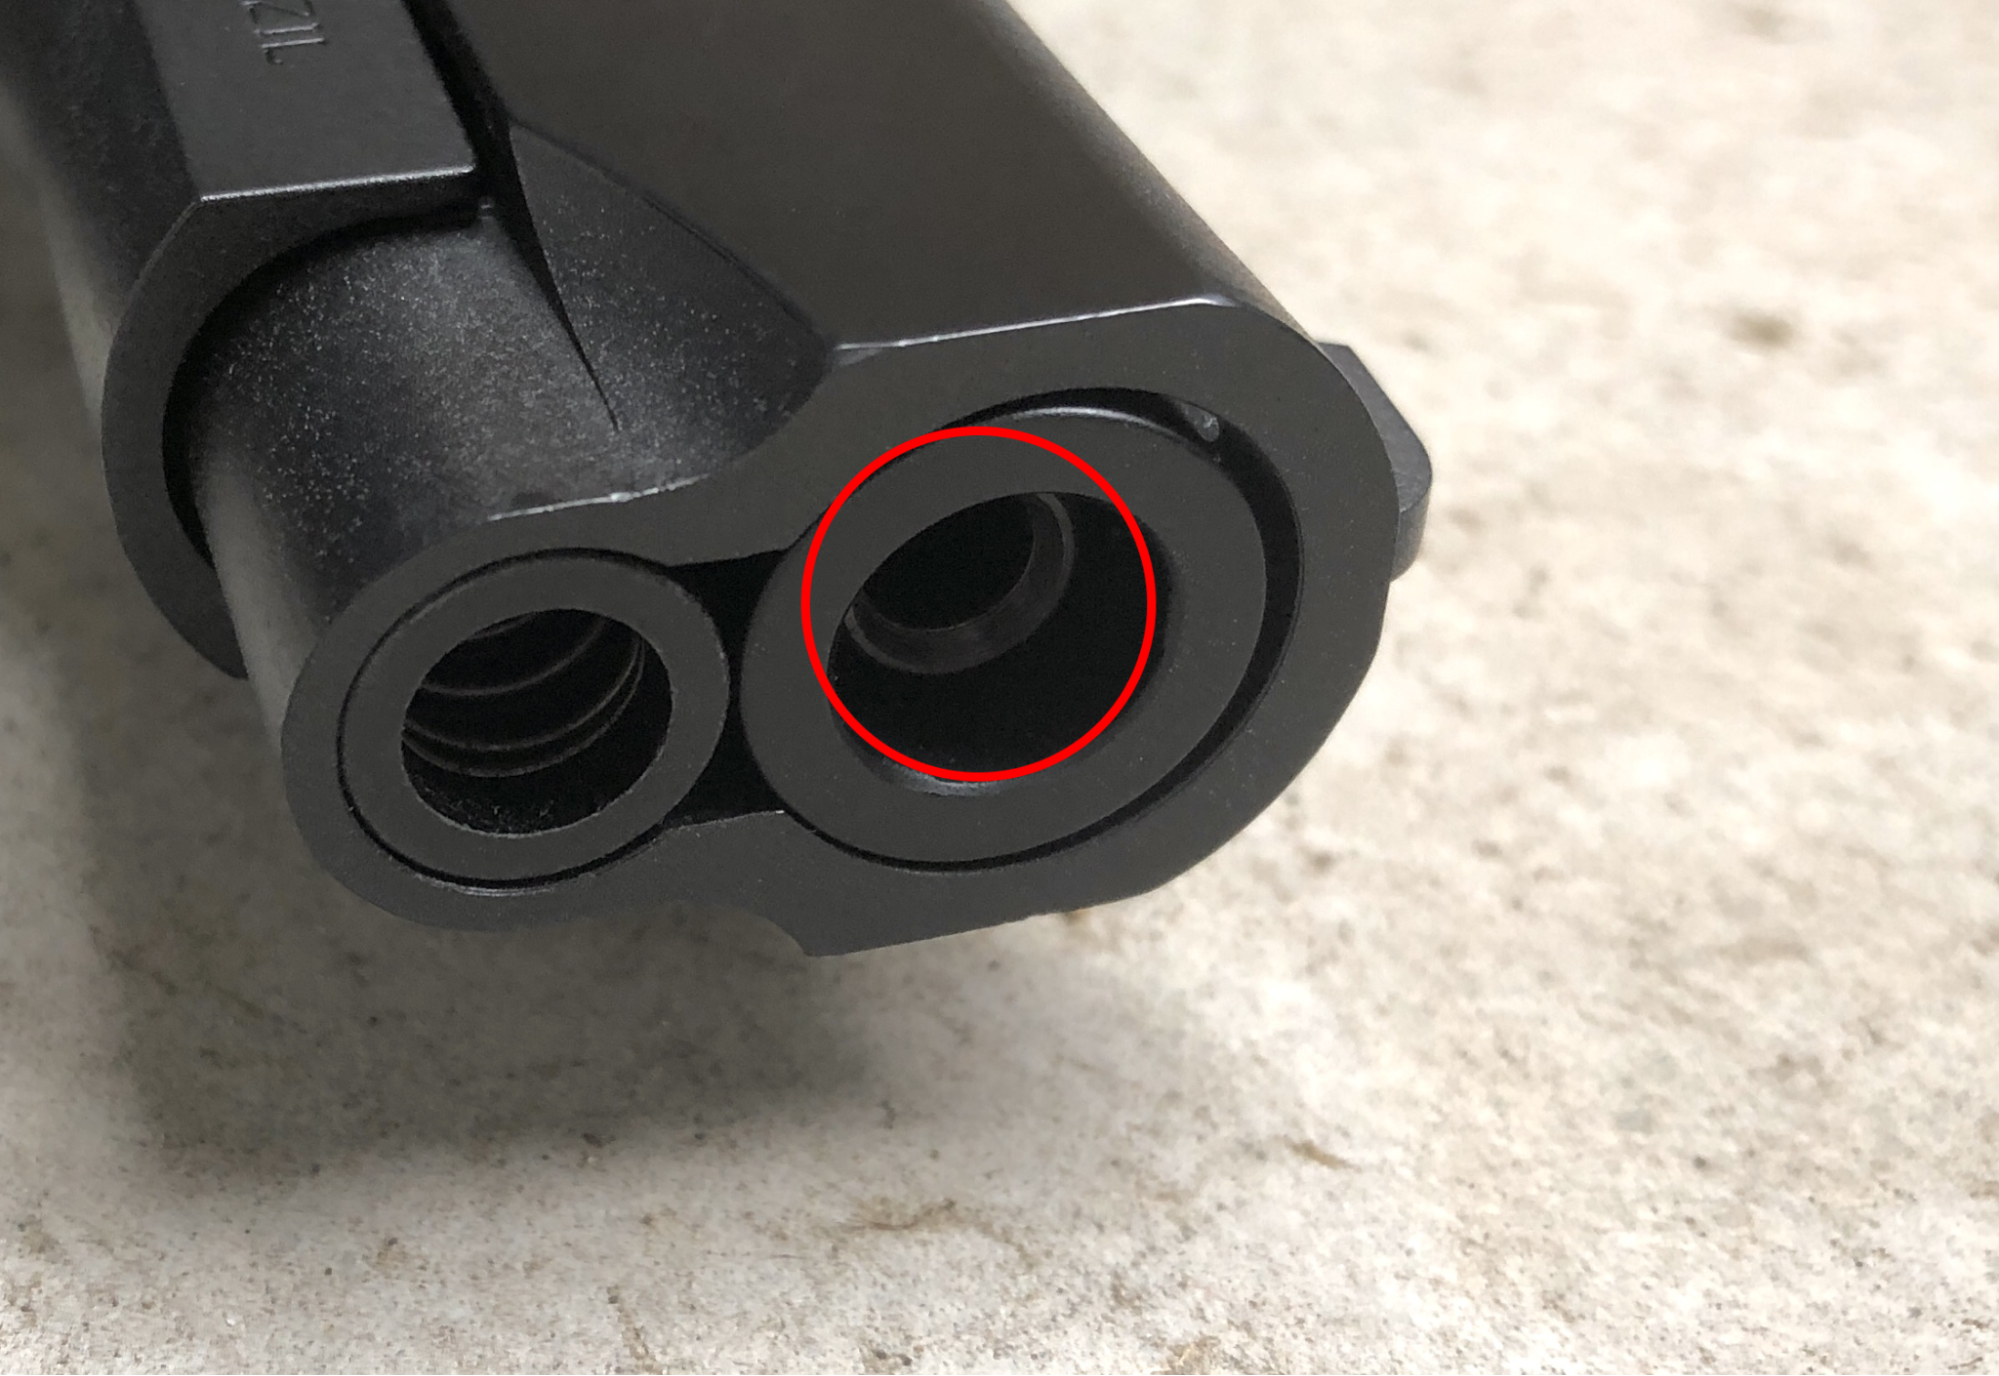 BB弾用のインナーバレルが銃口から見えています。3D系作品では珍しいですが、漫画やアニメ作品ではよく描写してしまっていることが多いです。